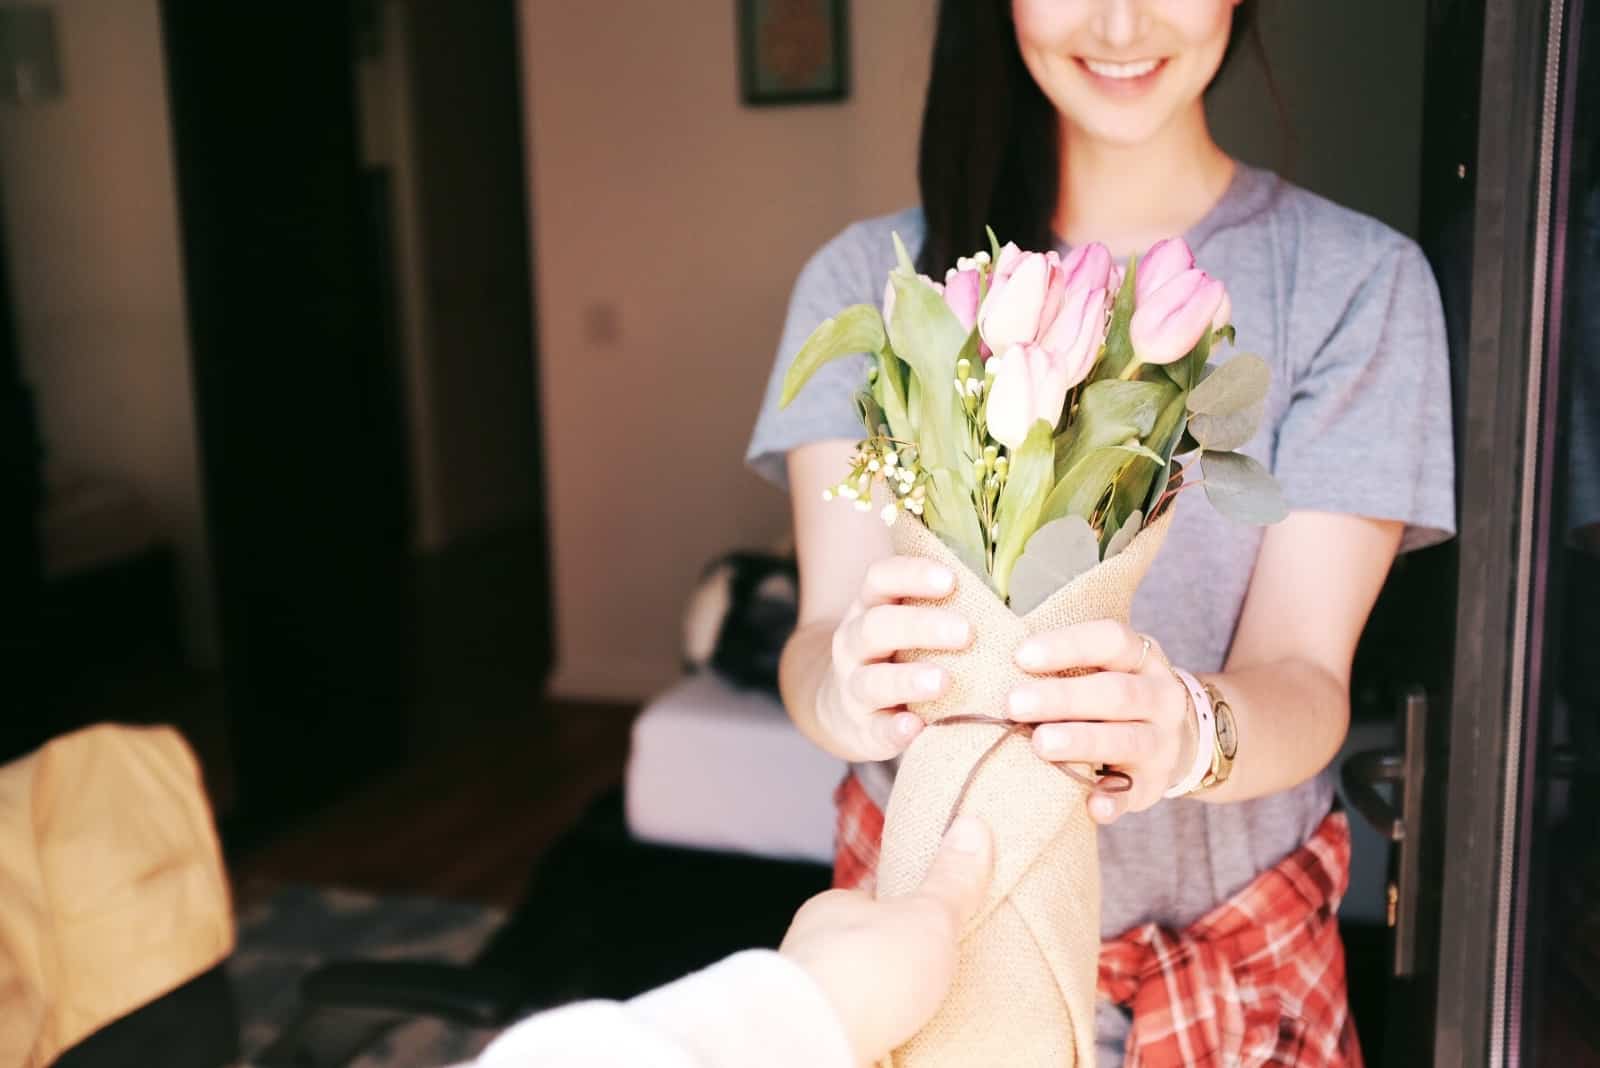 Homme donnant un bouquet de fleurs à une femme heureuse